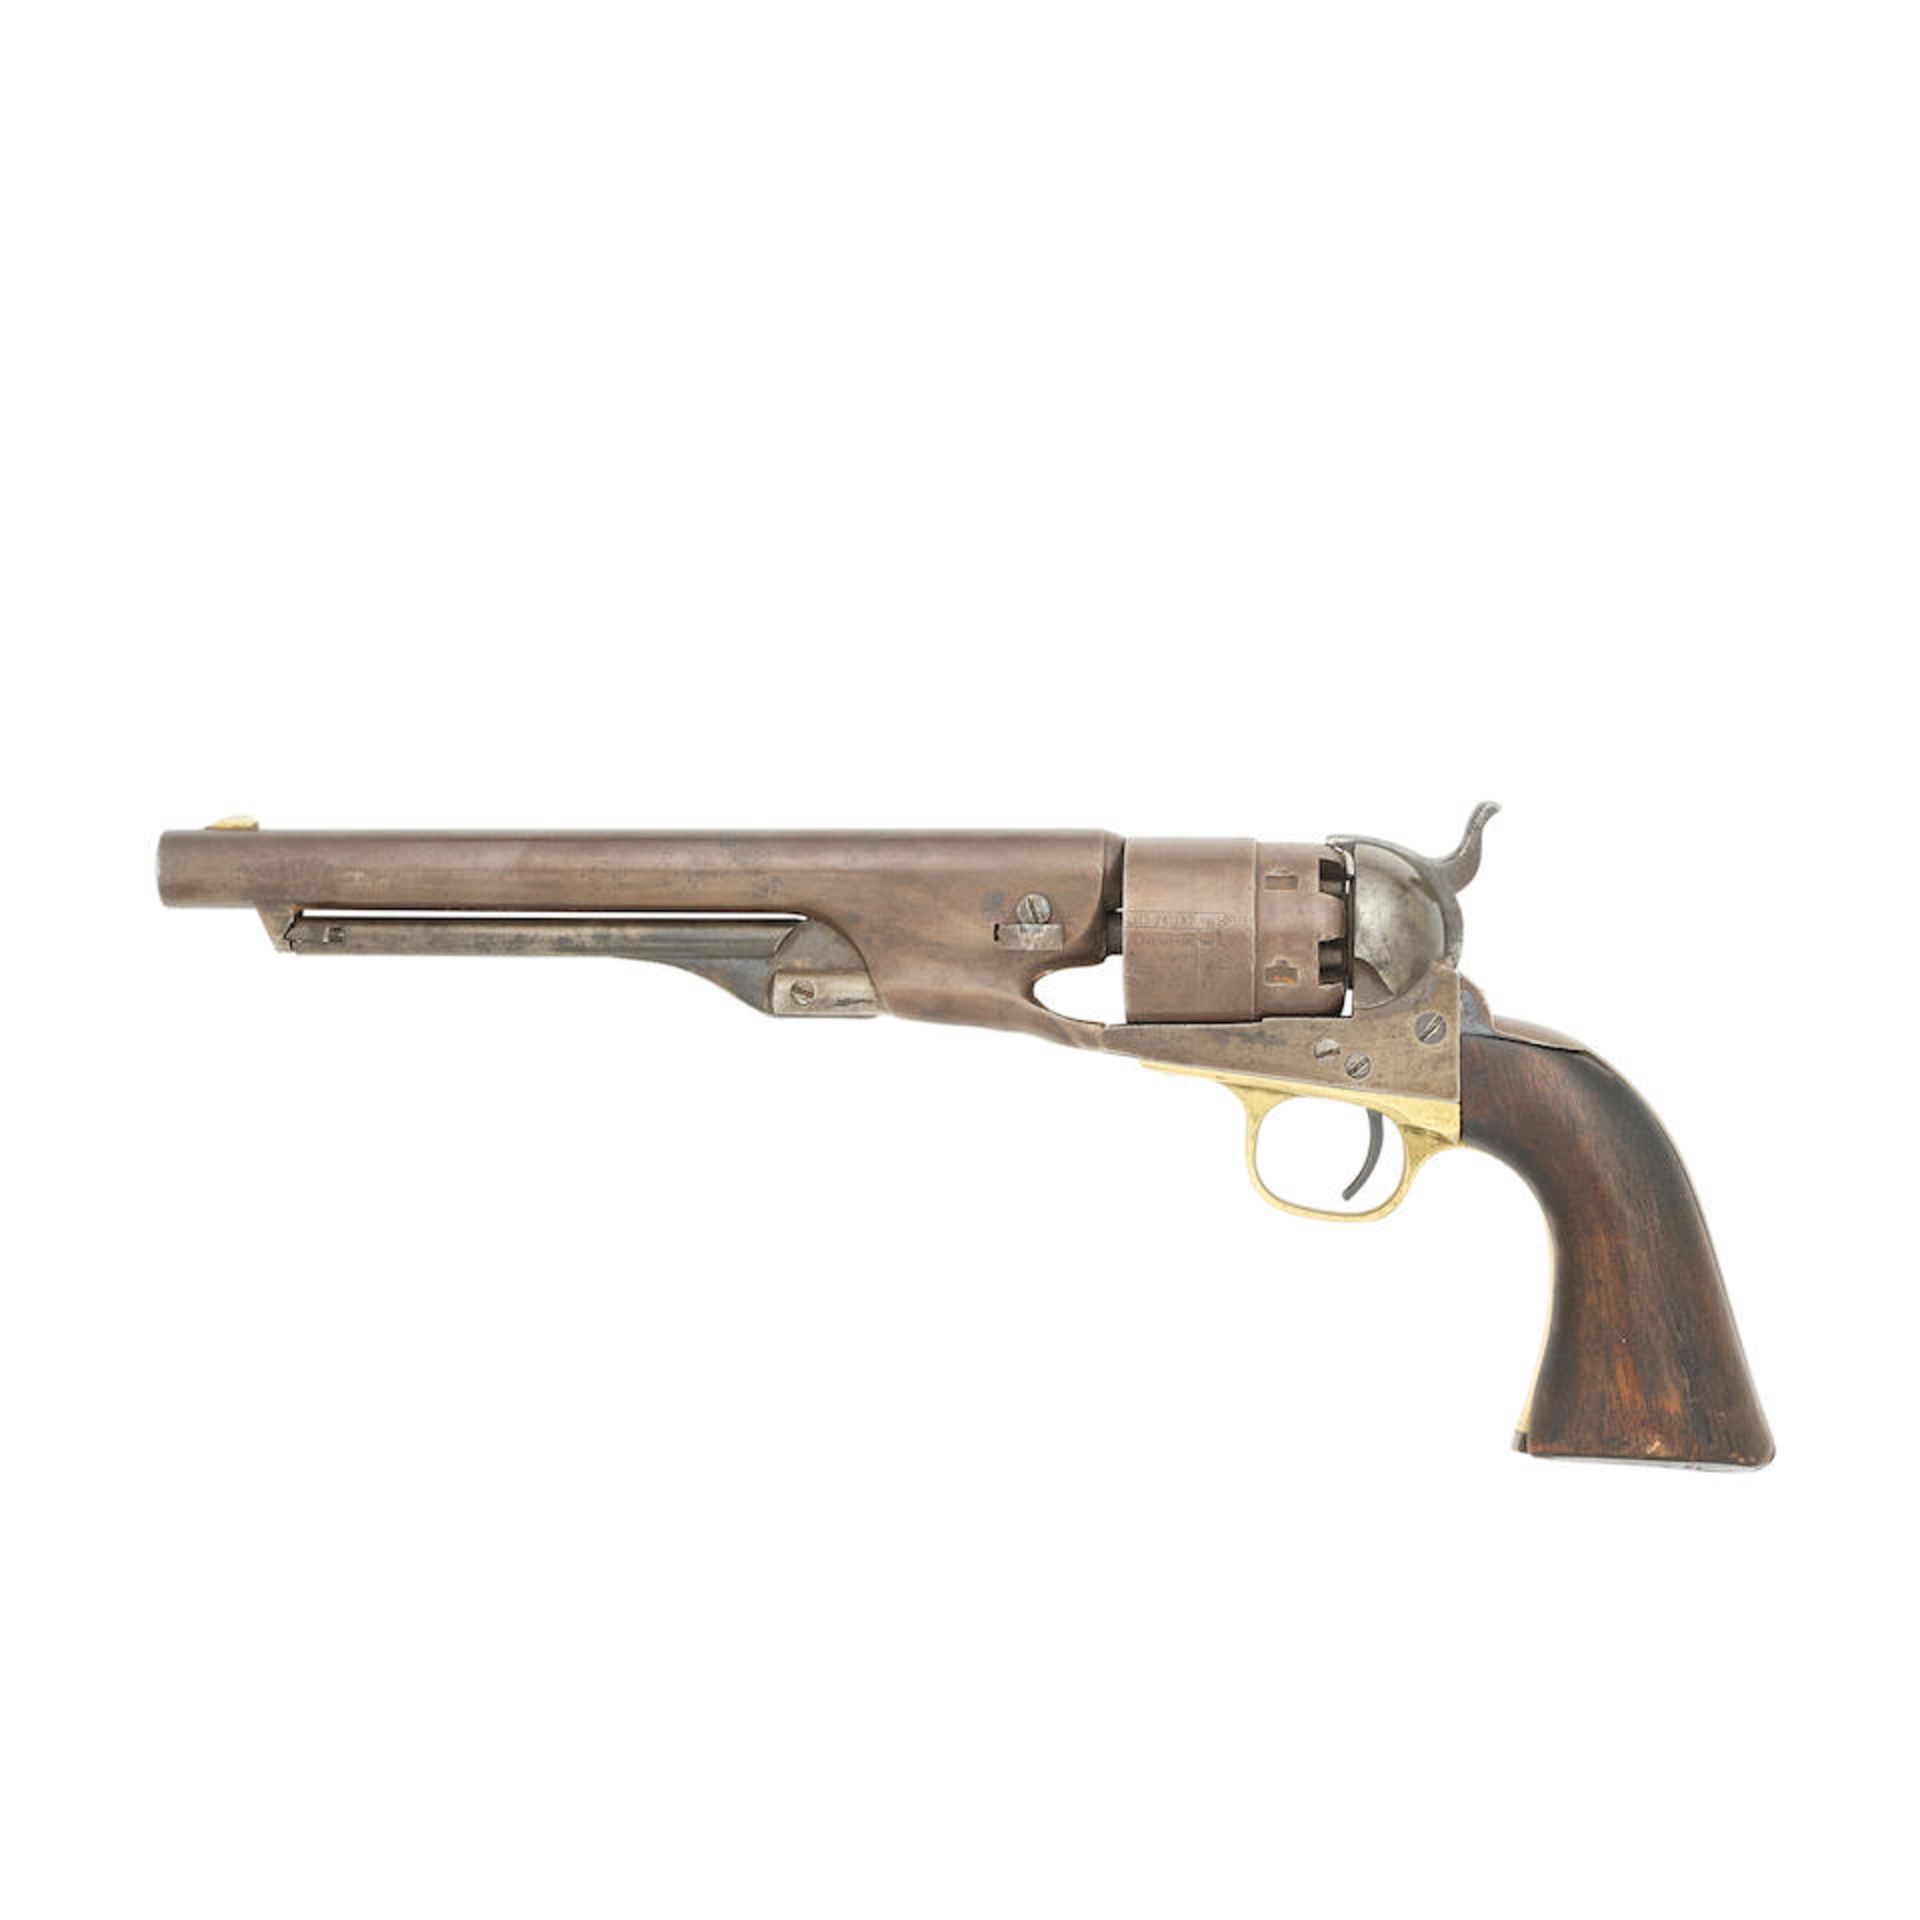 A Colt 1860 Model Army Percussion Revolver